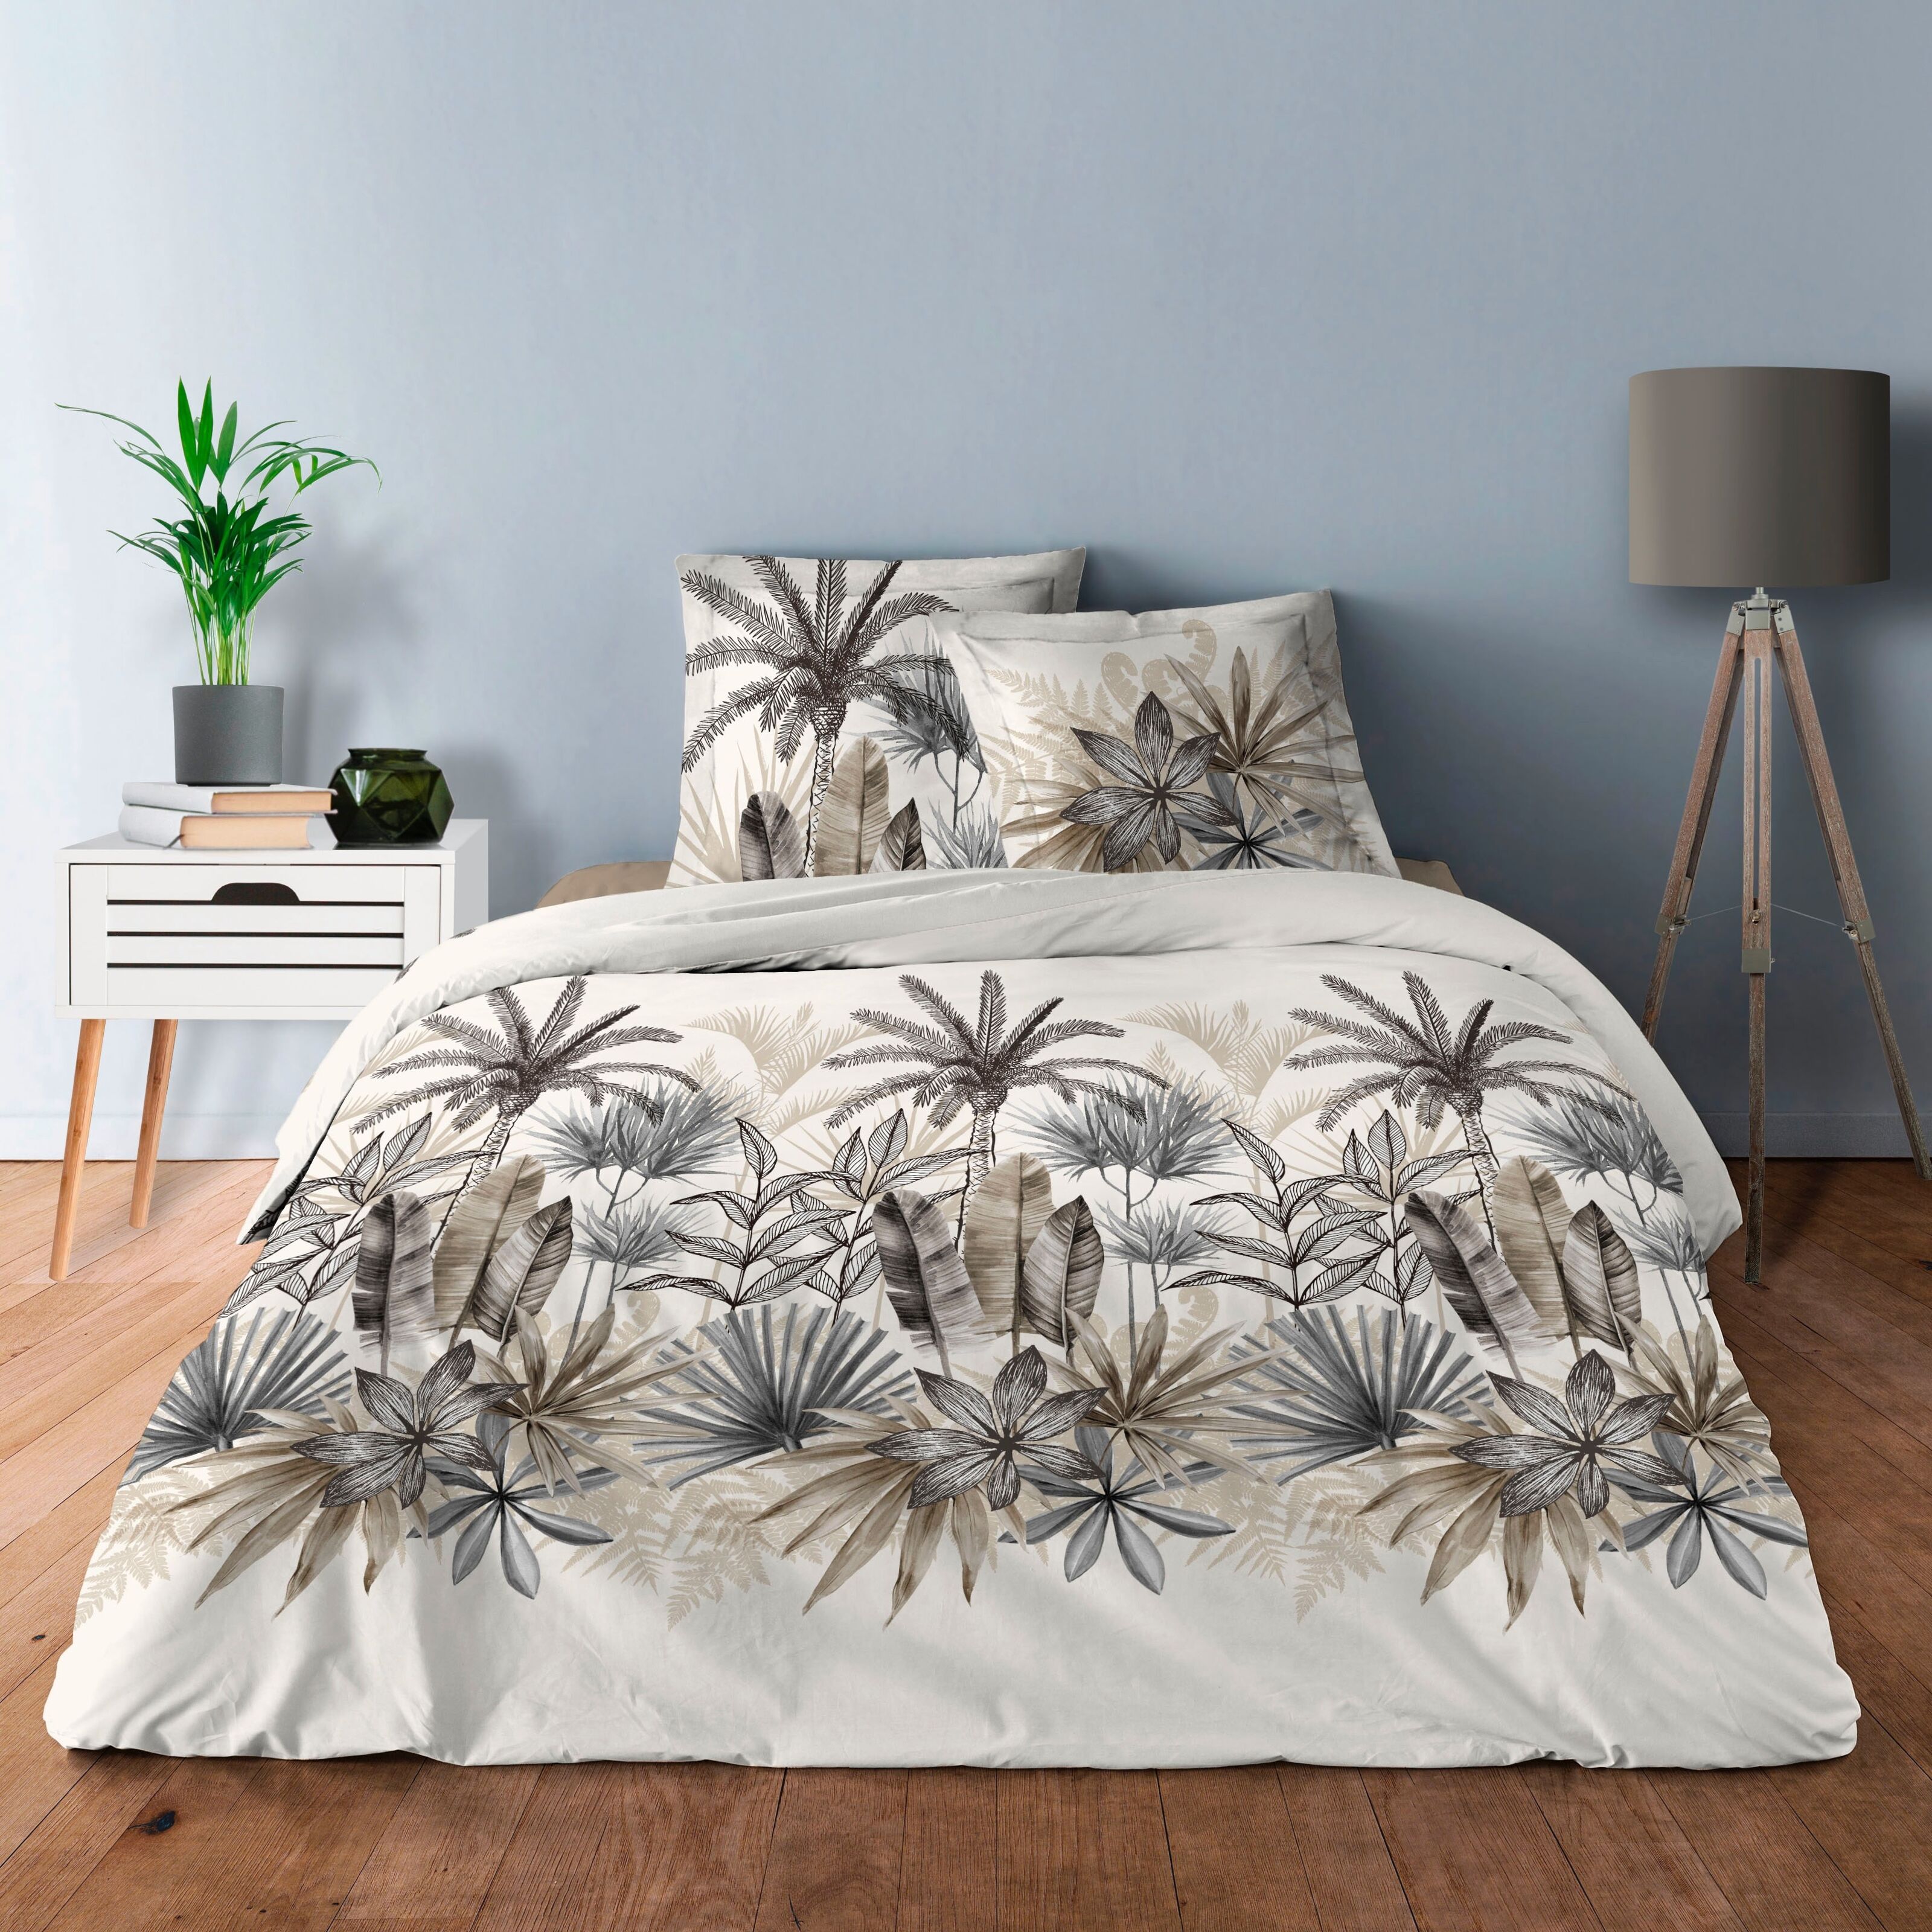 Bed Linen 220 x 240 cm Beige Leaves Duvet Cover Set 3-Piece Soft